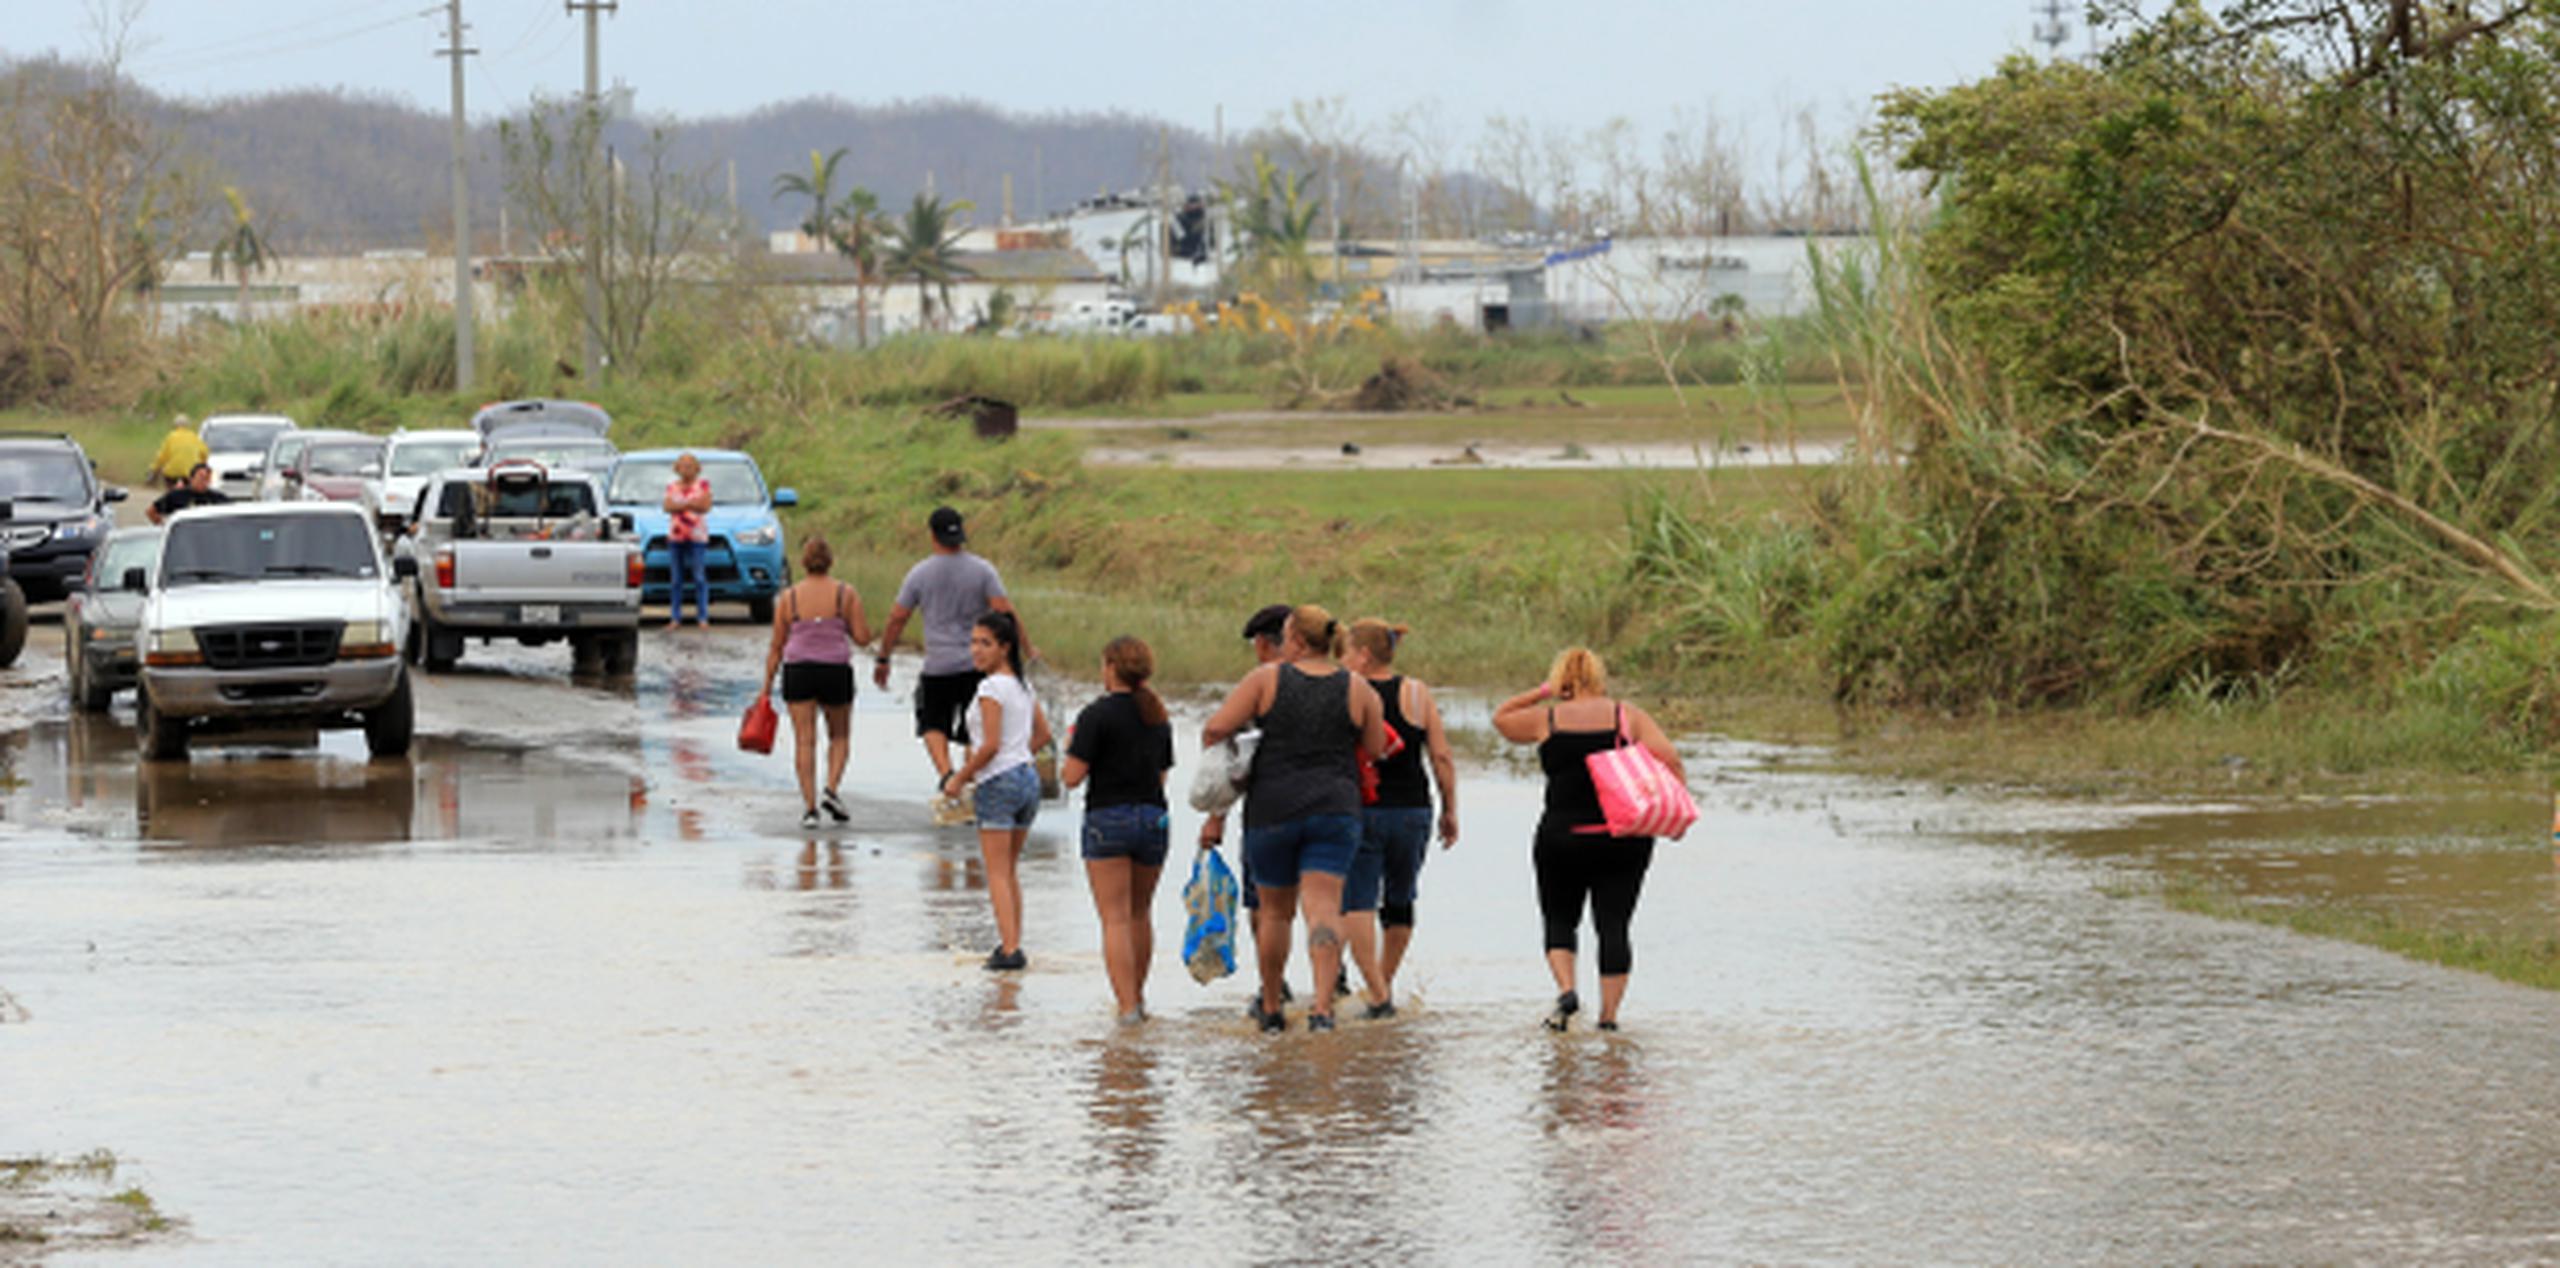 Toa Baja quedó inundada por las aguas Río La Plata durante el paso del huracán María. (david.villafane@gfrmedia.com)
